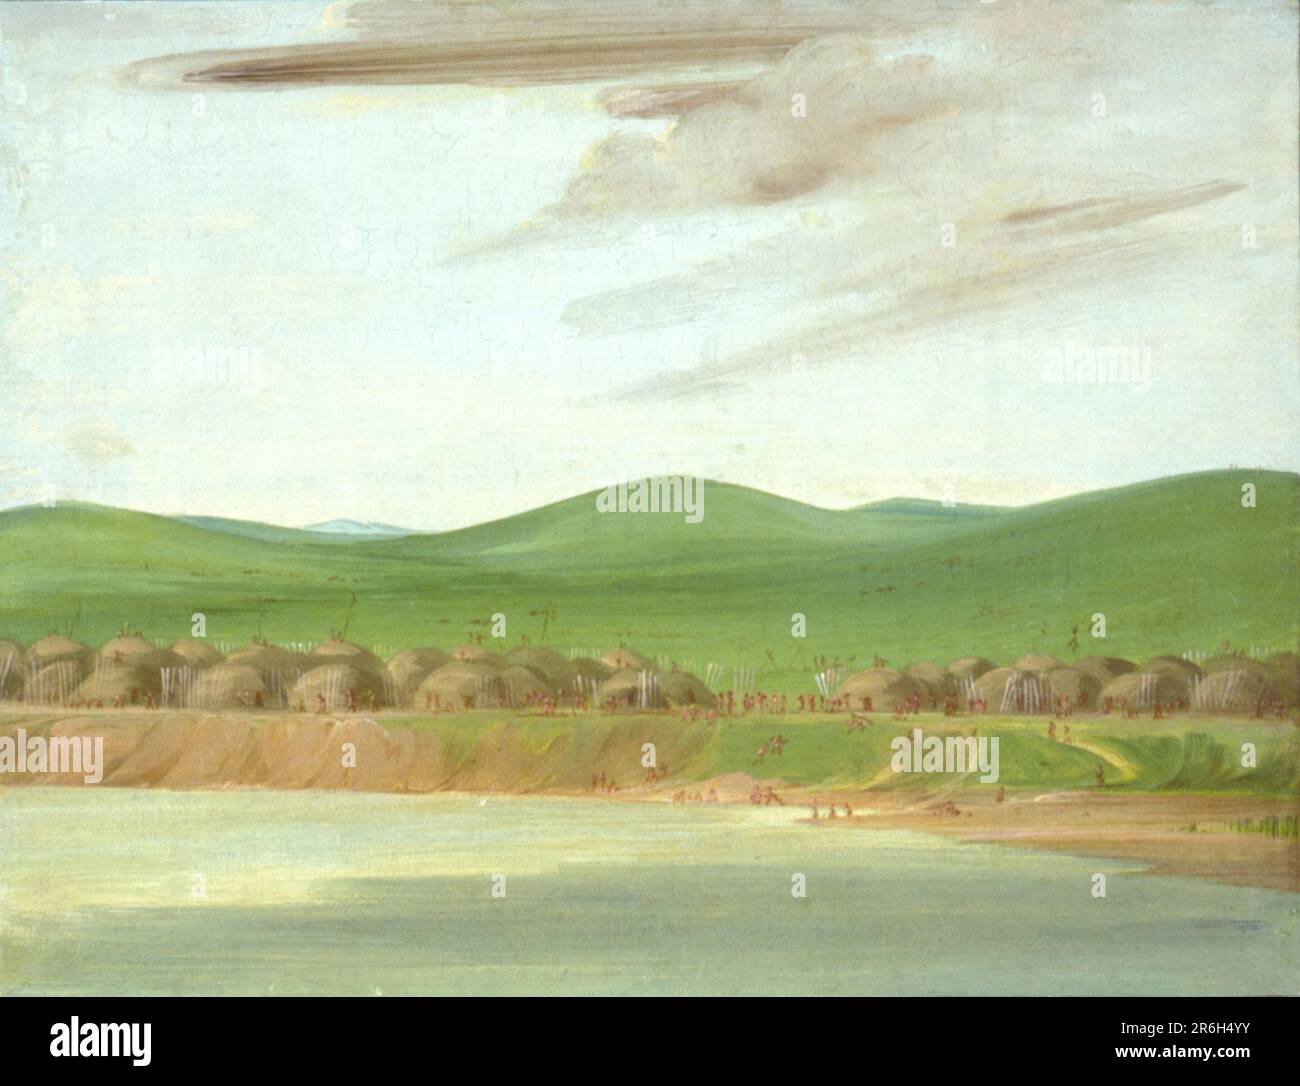 Arikara Villaggio di Lodge coperti dalla Terra, 1600 miglia sopra St. Louis. olio su tela. Data: 1832. Museo: Smithsonian American Art Museum. Foto Stock